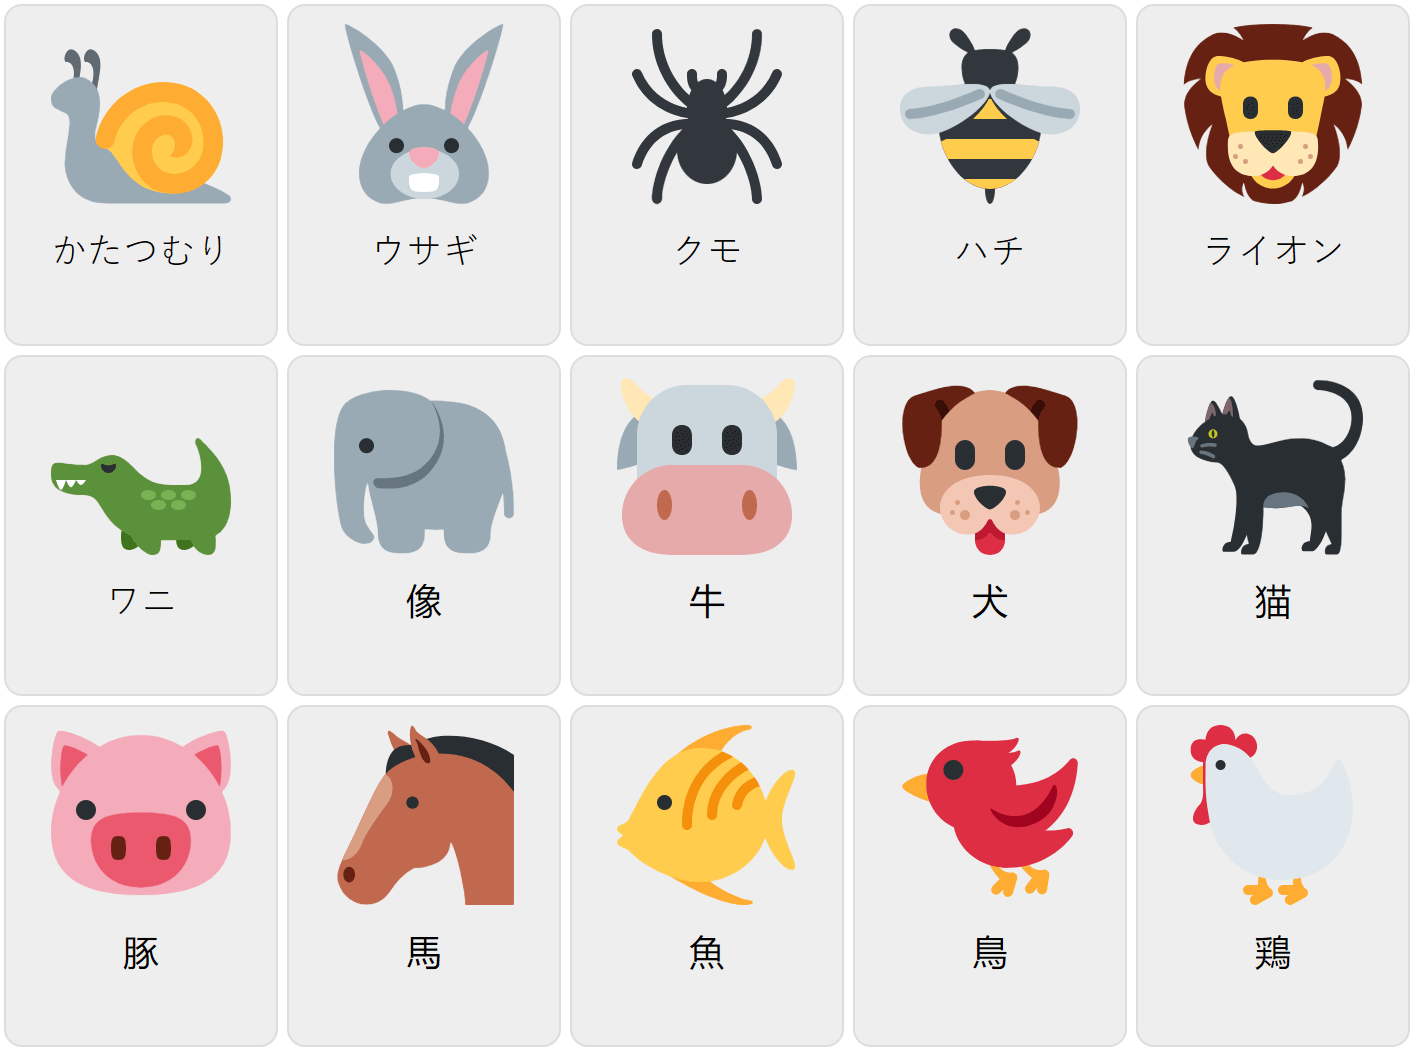 Djur på japanska